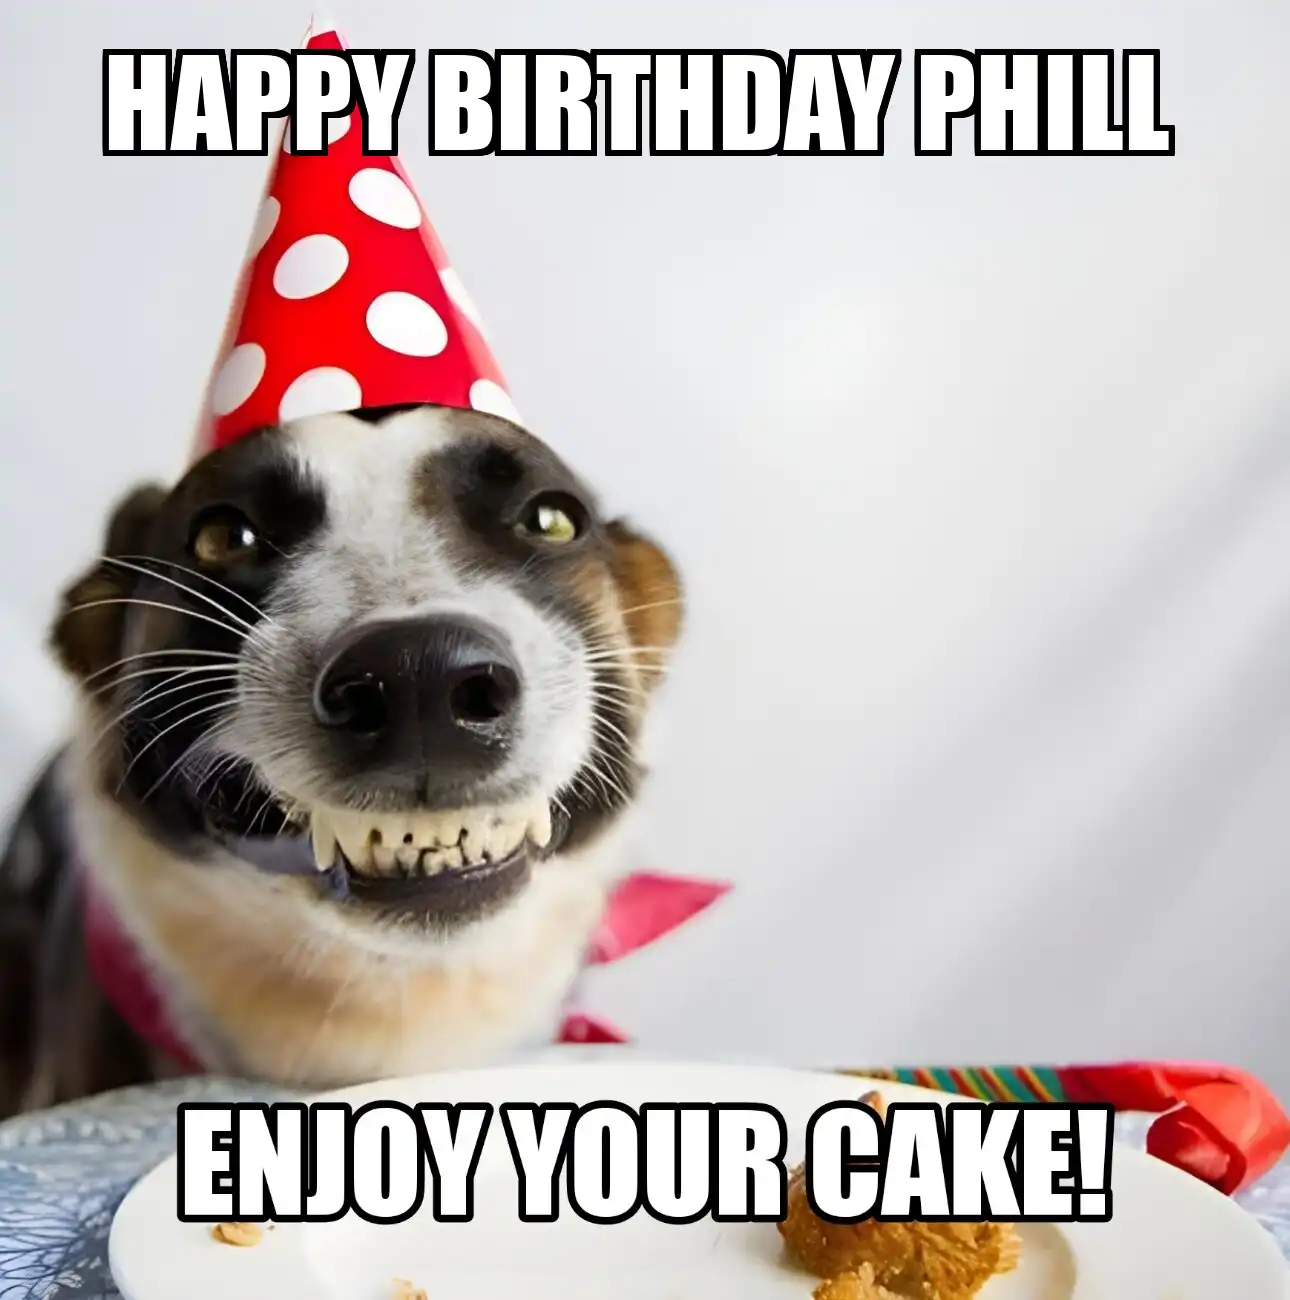 Happy Birthday Phill Enjoy Your Cake Dog Meme